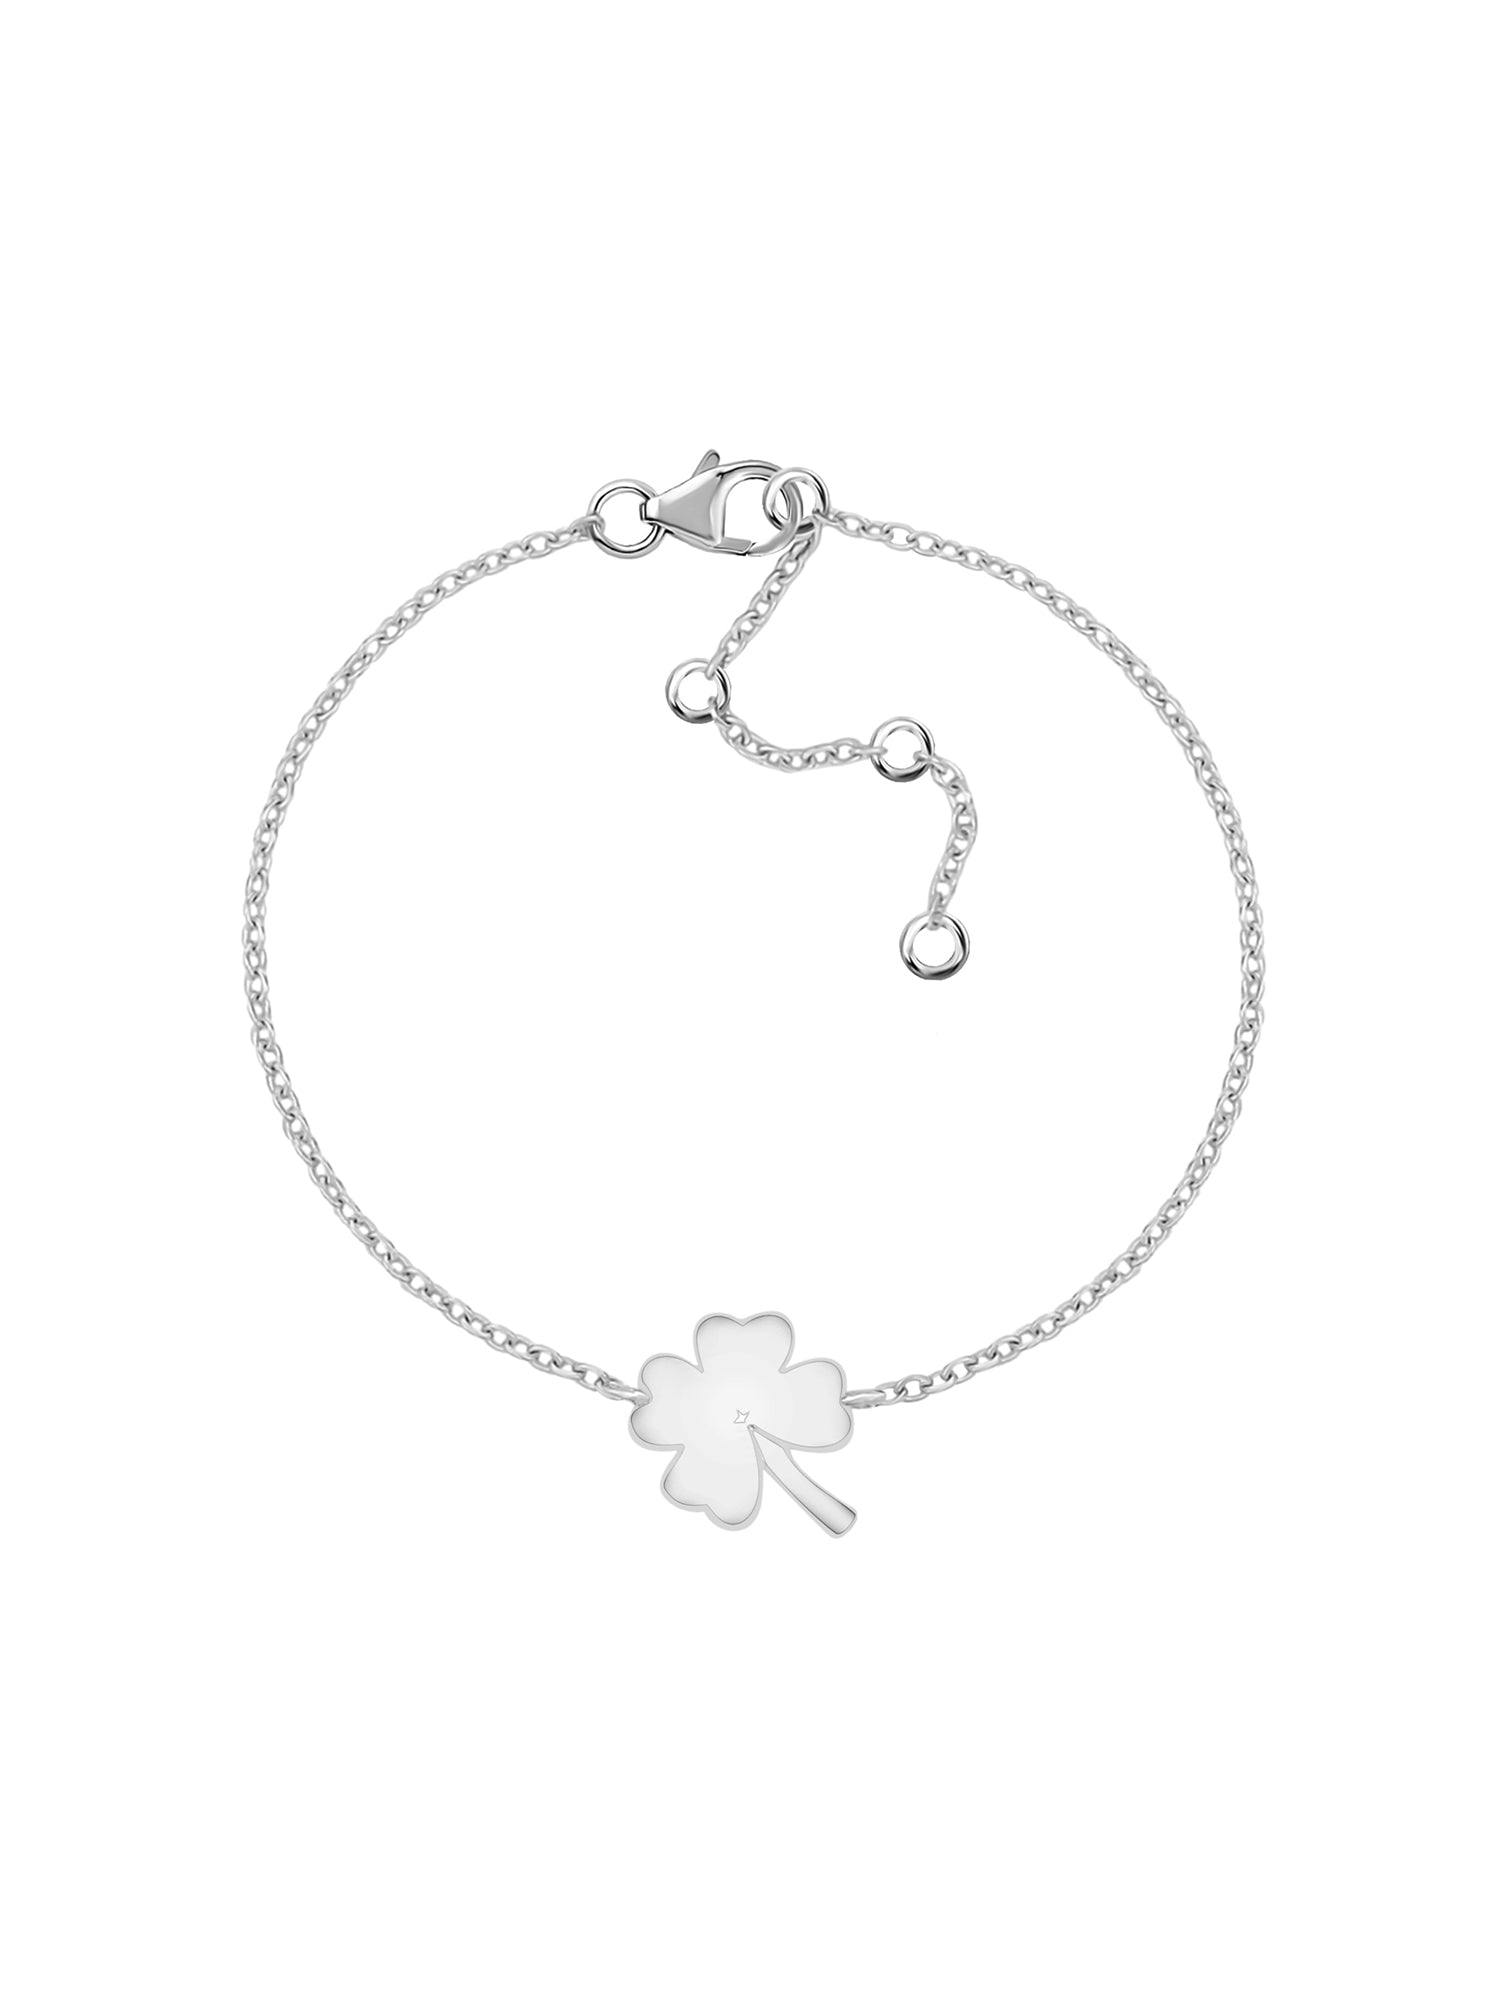 Clover Leaf Silver Bracelet For Women-4